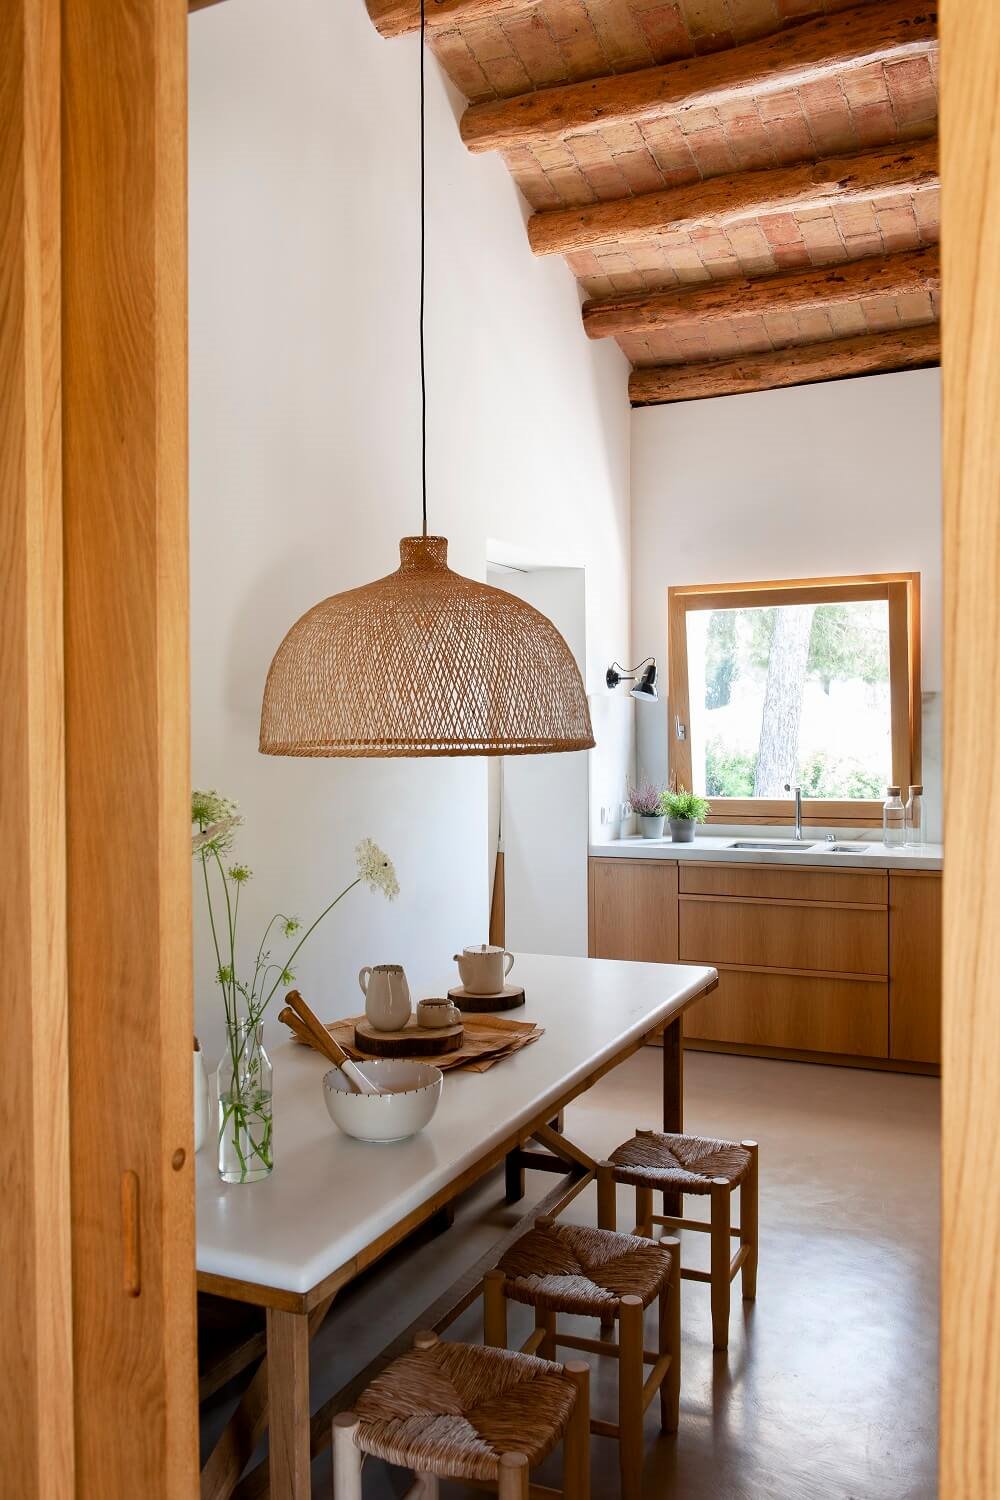 Lámpara de mimbre en cocina rústica y cubierta catalana